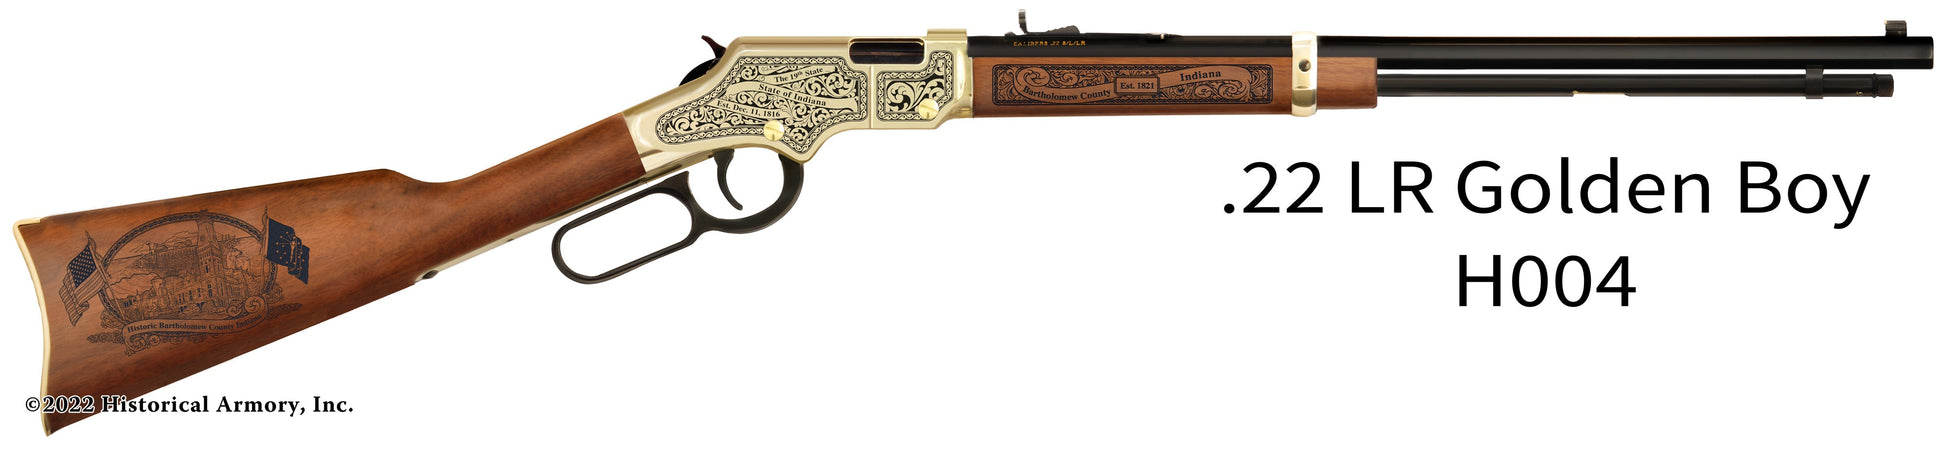 Bartholomew County Indiana Engraved Henry Golden Boy Rifle